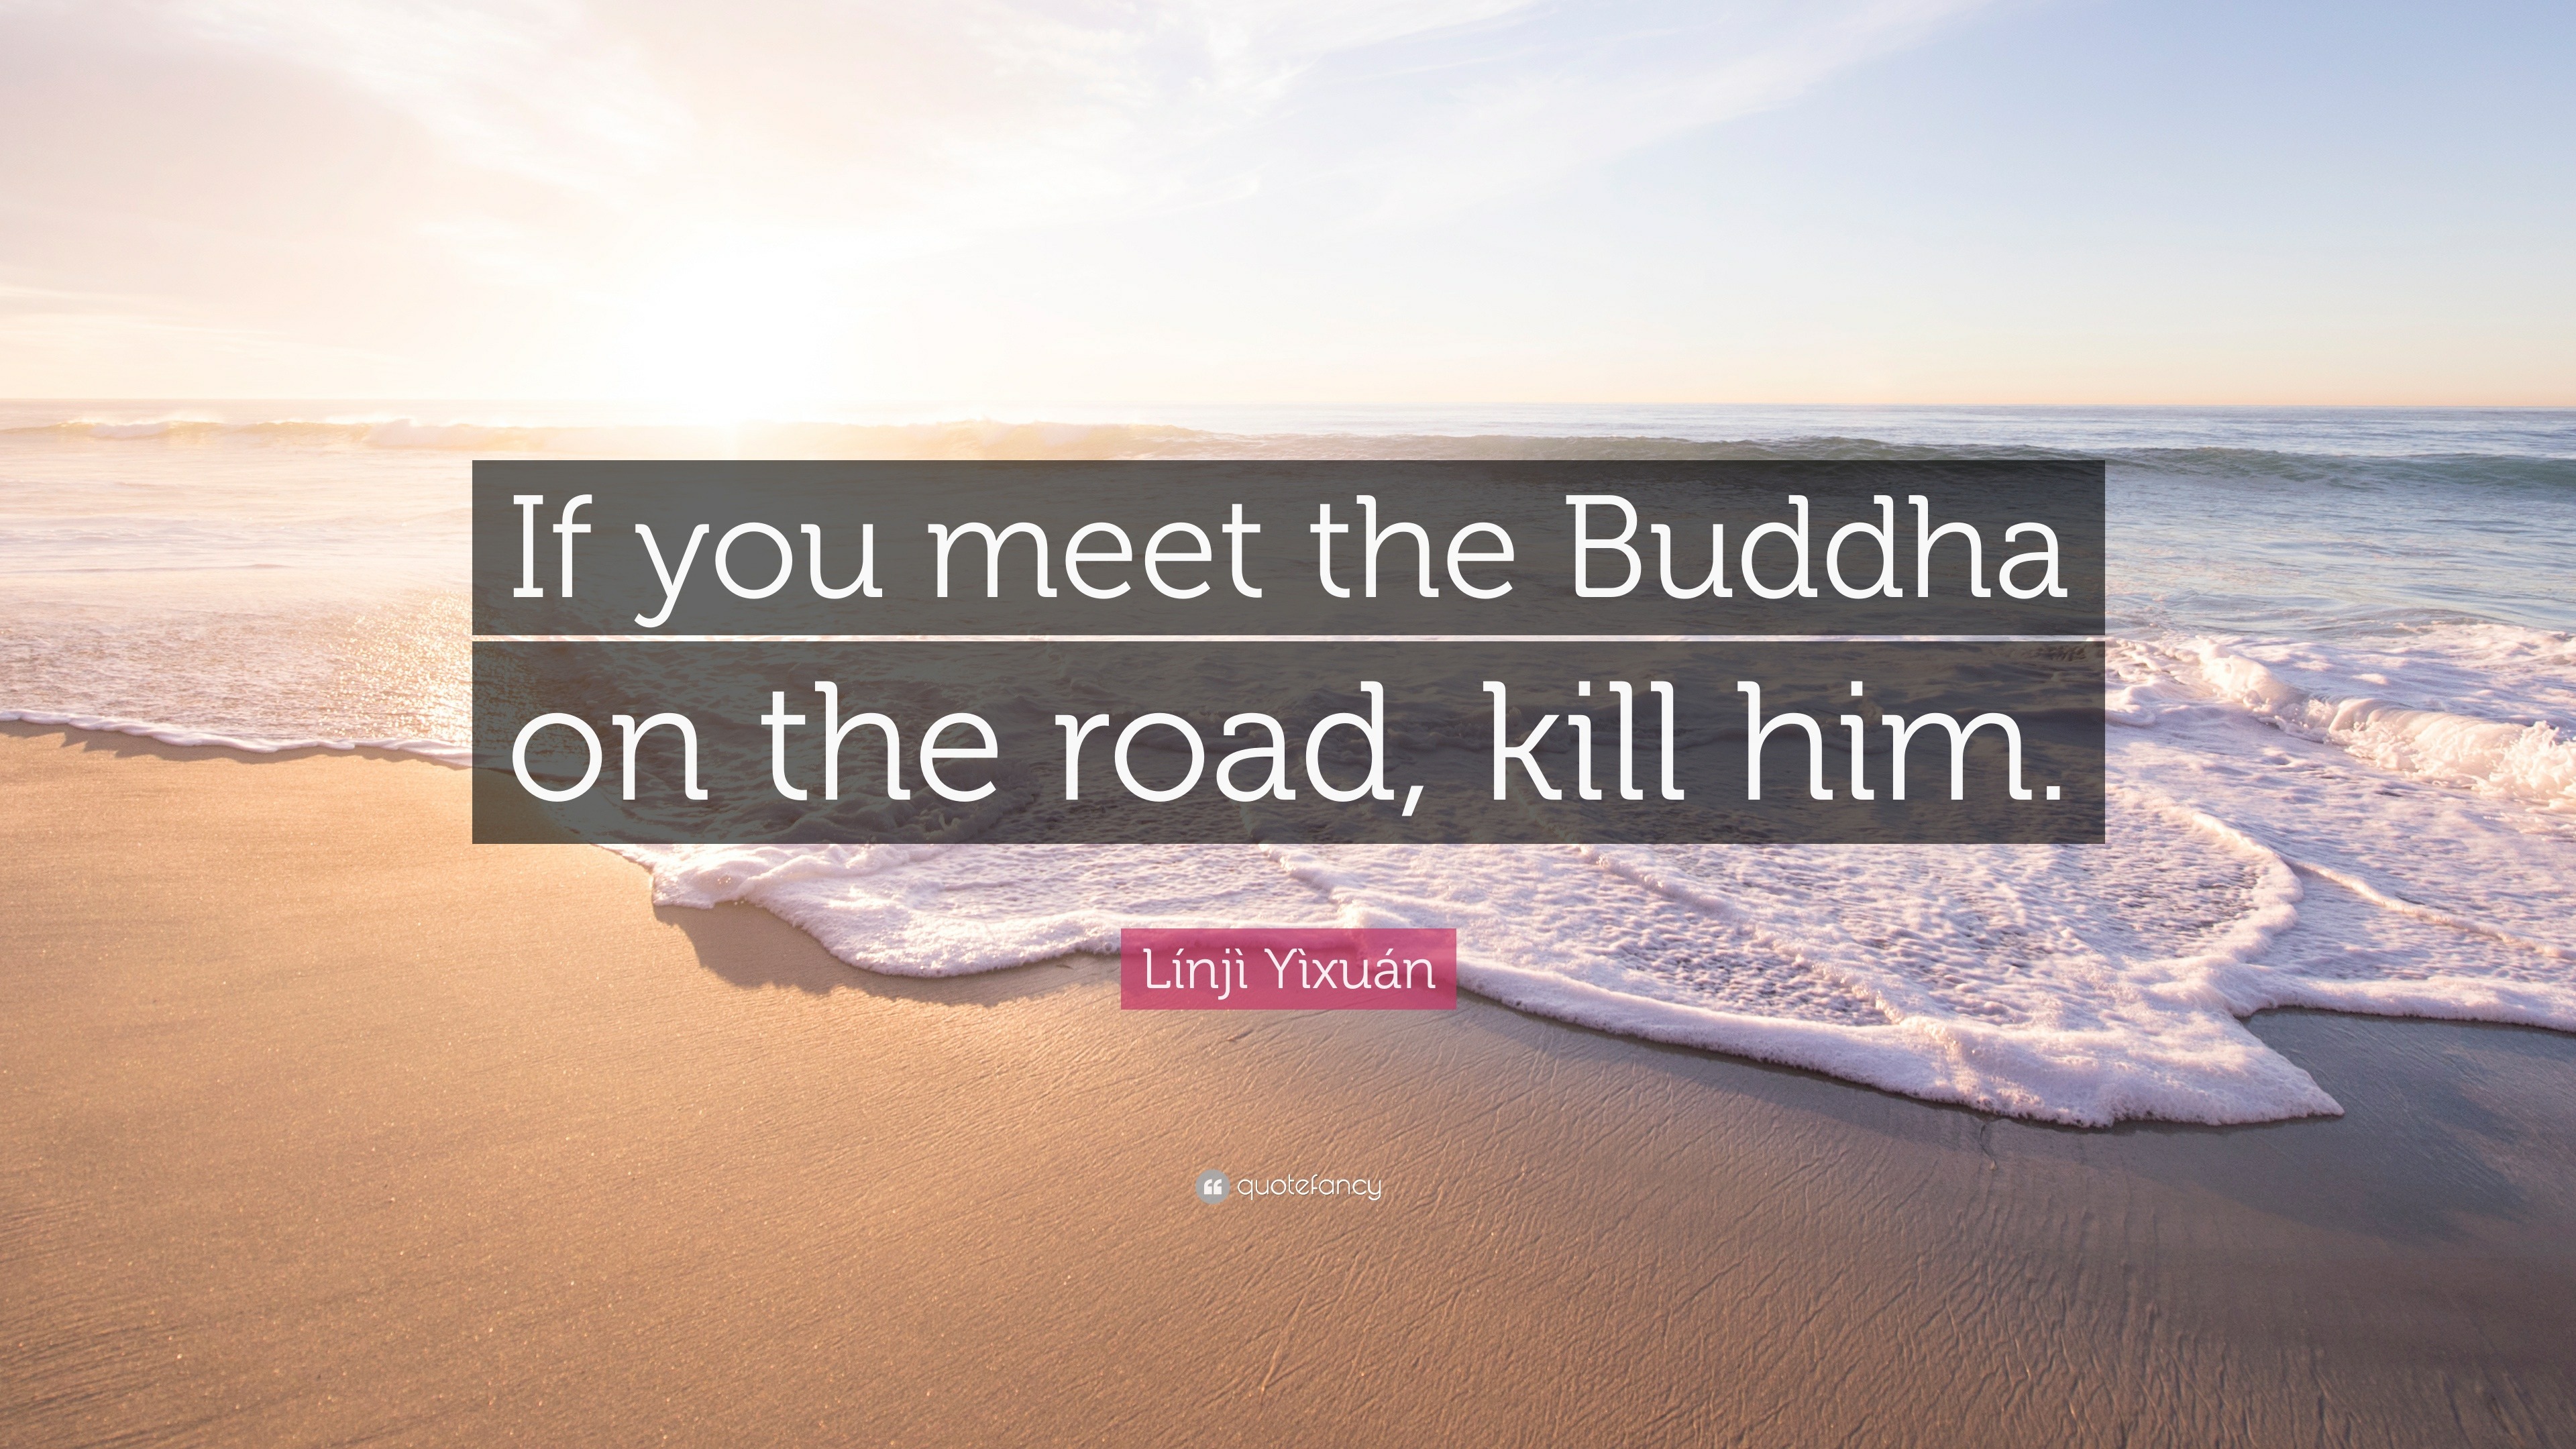 Azië roem Soms soms Línjì Yìxuán Quote: “If you meet the Buddha on the road, kill him.”